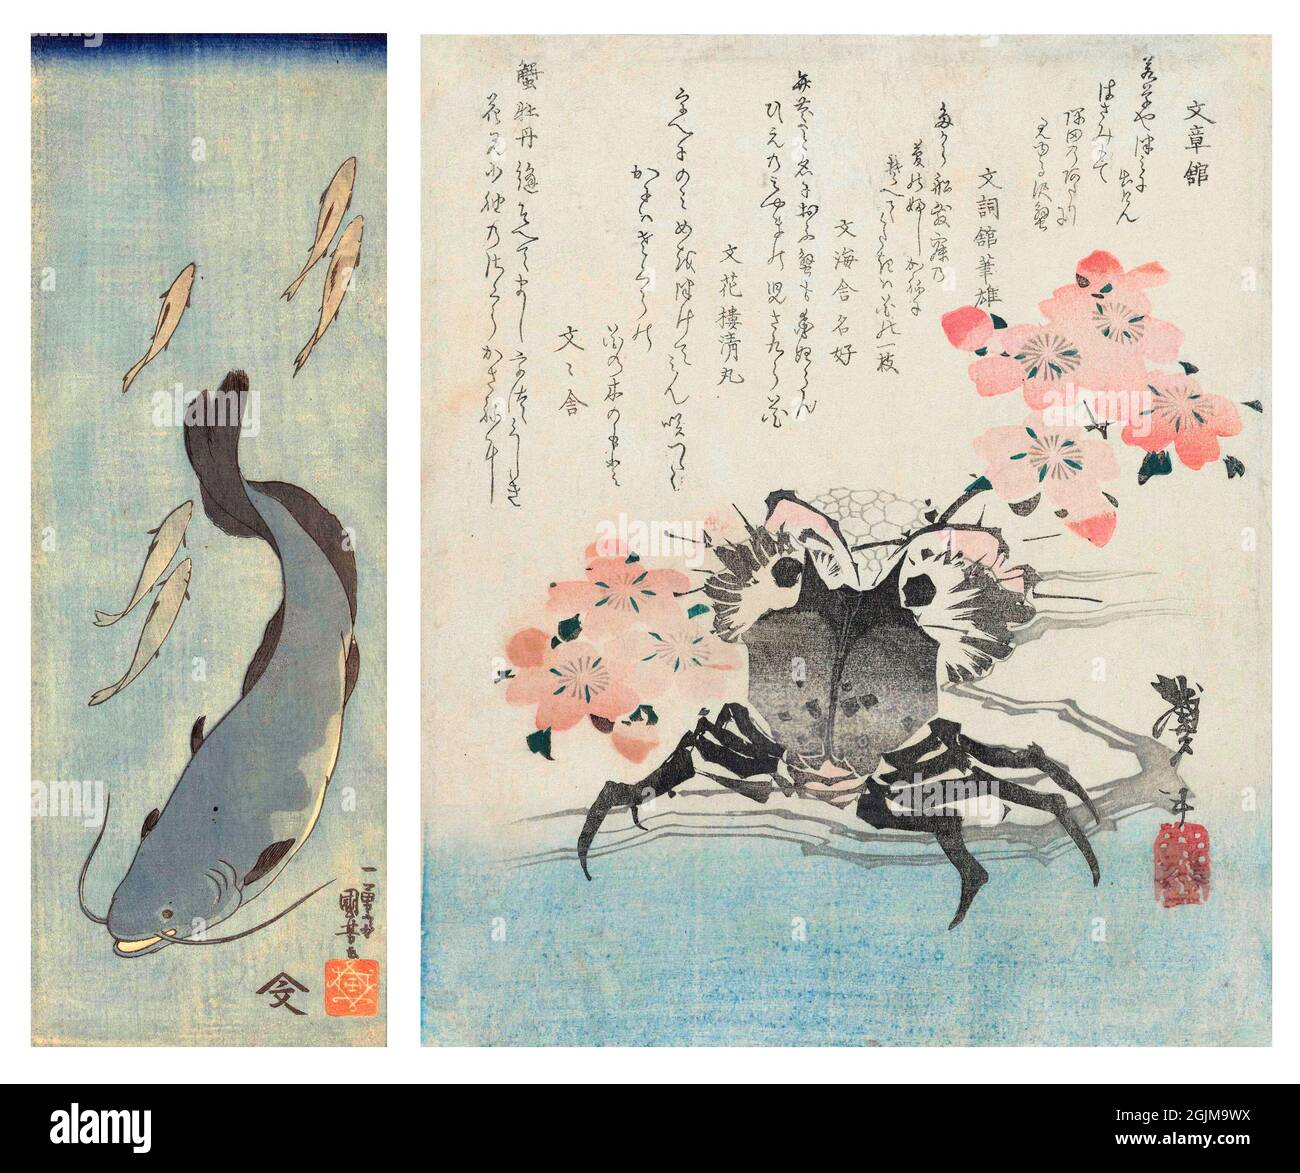 Sélection de 2 boiseries peintes au Japon. À gauche : poisson-chat et cinq truites. À droite : crabe au milieu de la fleur de cerisier. Le crabe est l'emblème du poète Bunbunsha Kanikomaru. Conception optimisée et améliorée unique de deux illustrations japonais de coupe de bois du XIXe siècle. Banque D'Images